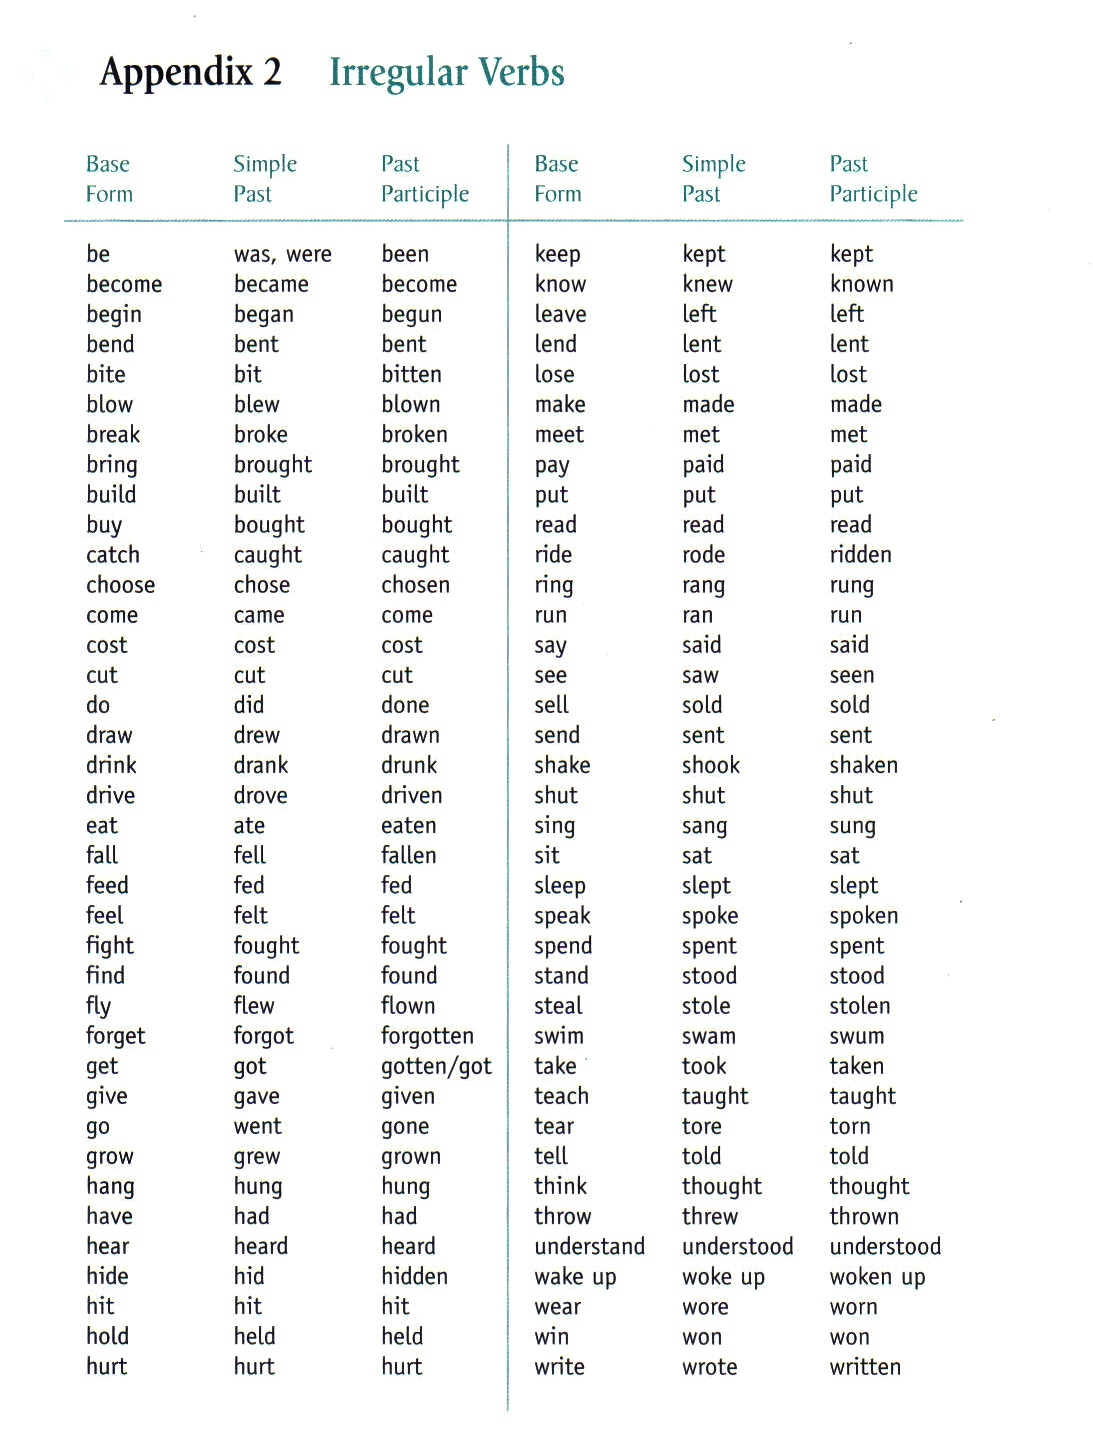 irregular-verbs